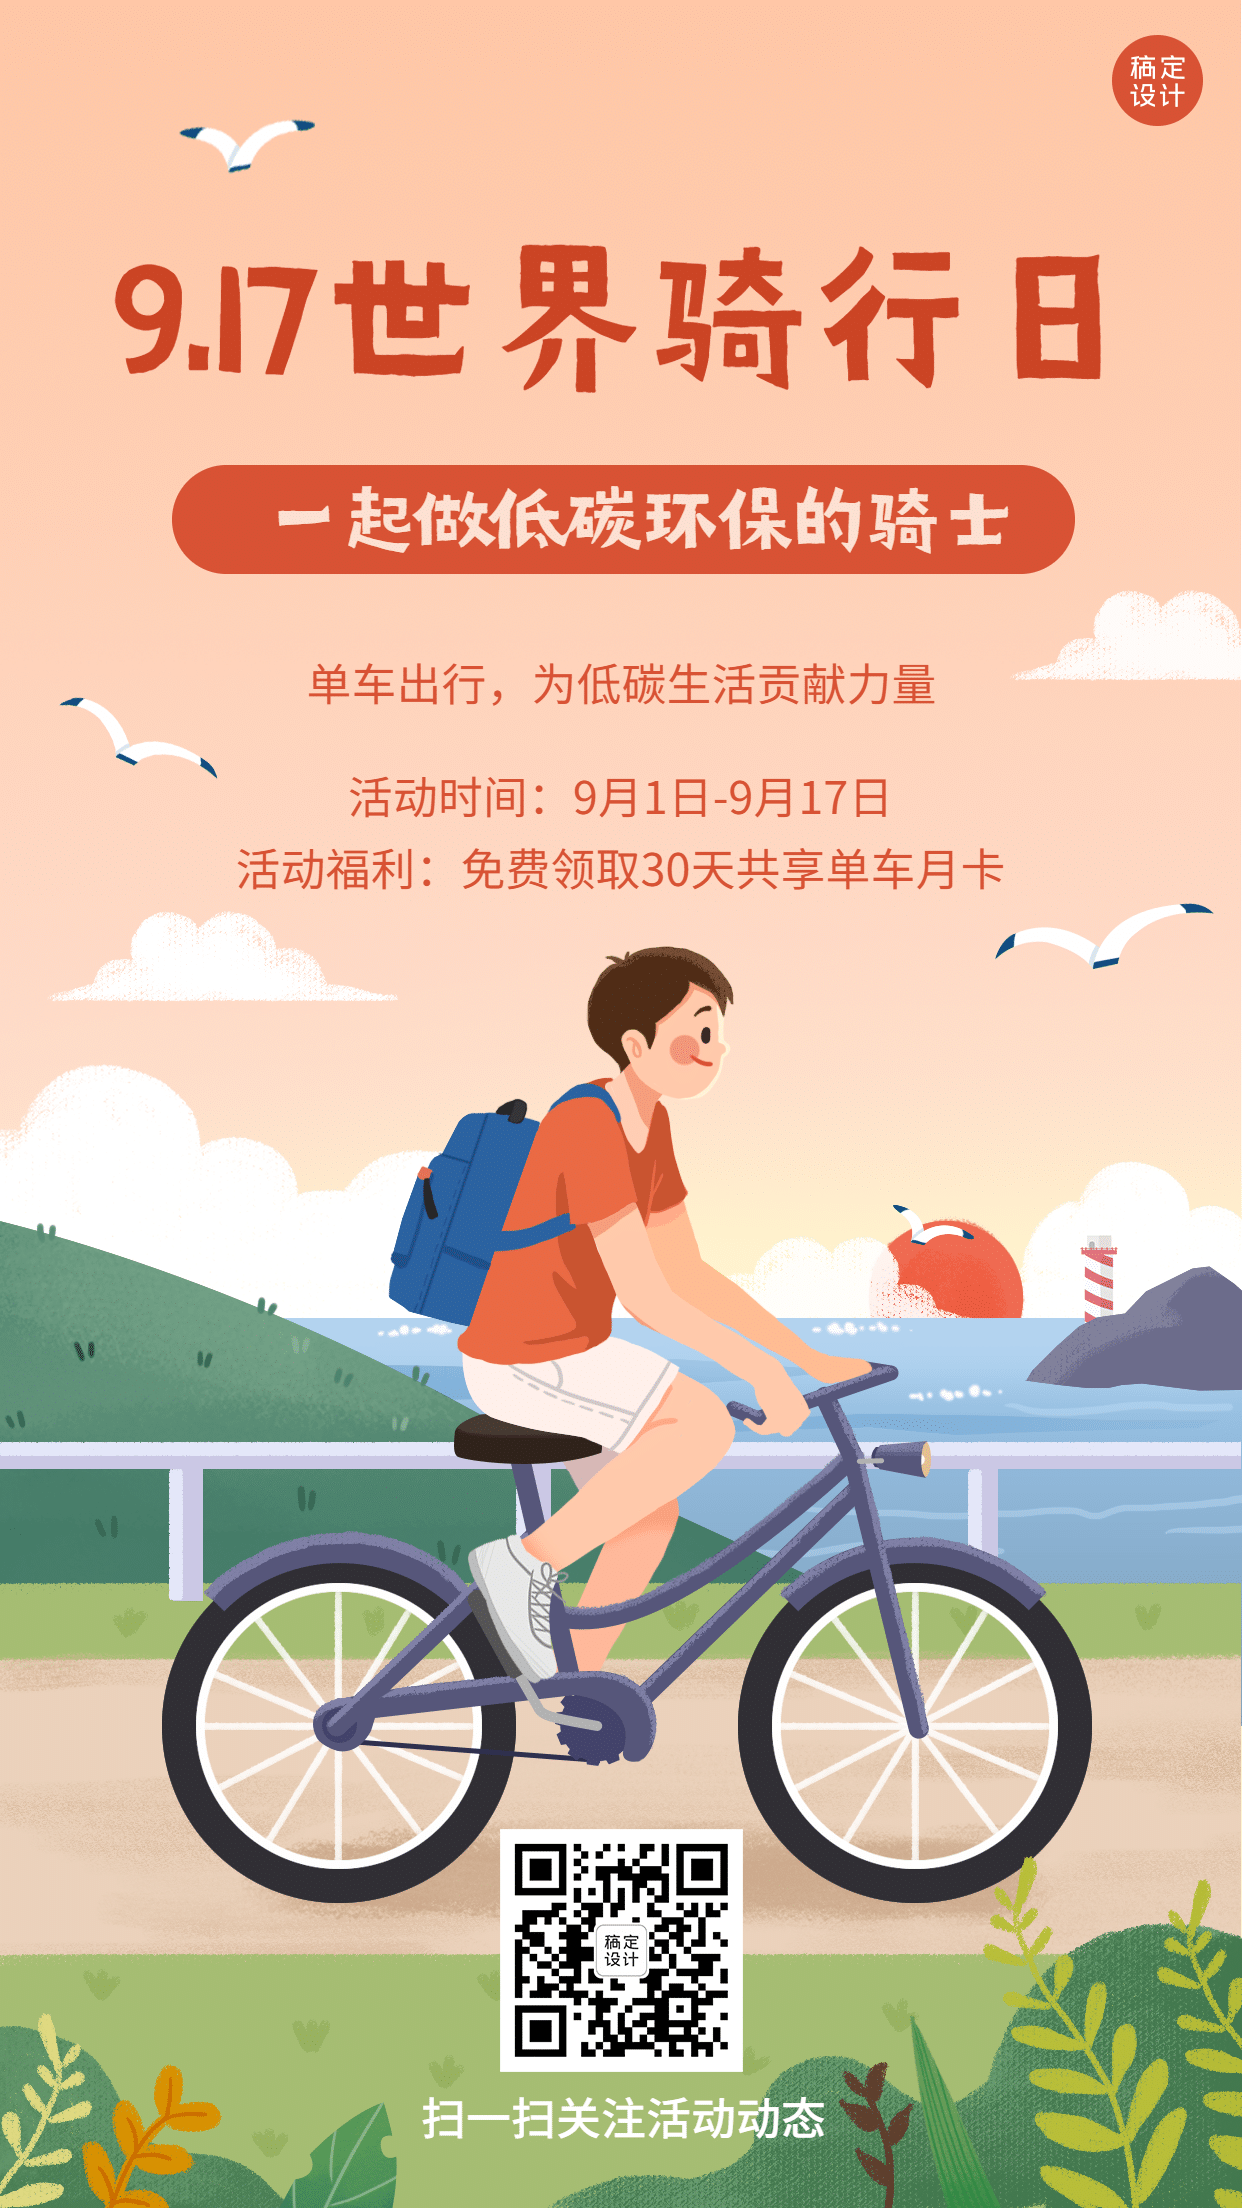 世界骑行日运动环保宣传手绘手机海报